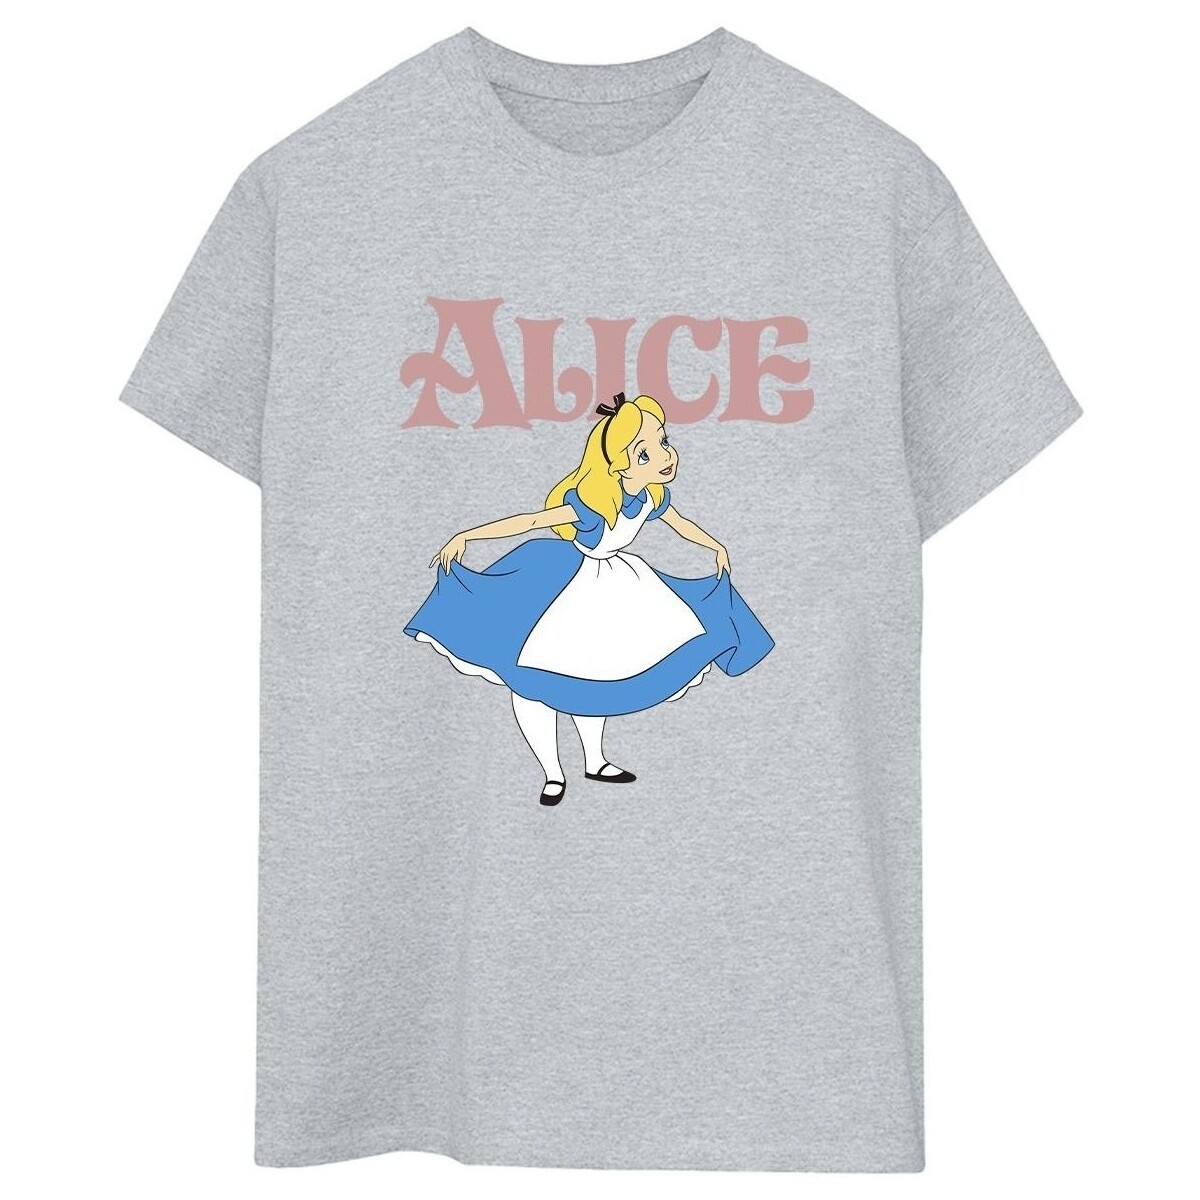 textil Mujer Camisetas manga larga Disney Alice In Wonderland Take A Bow Gris